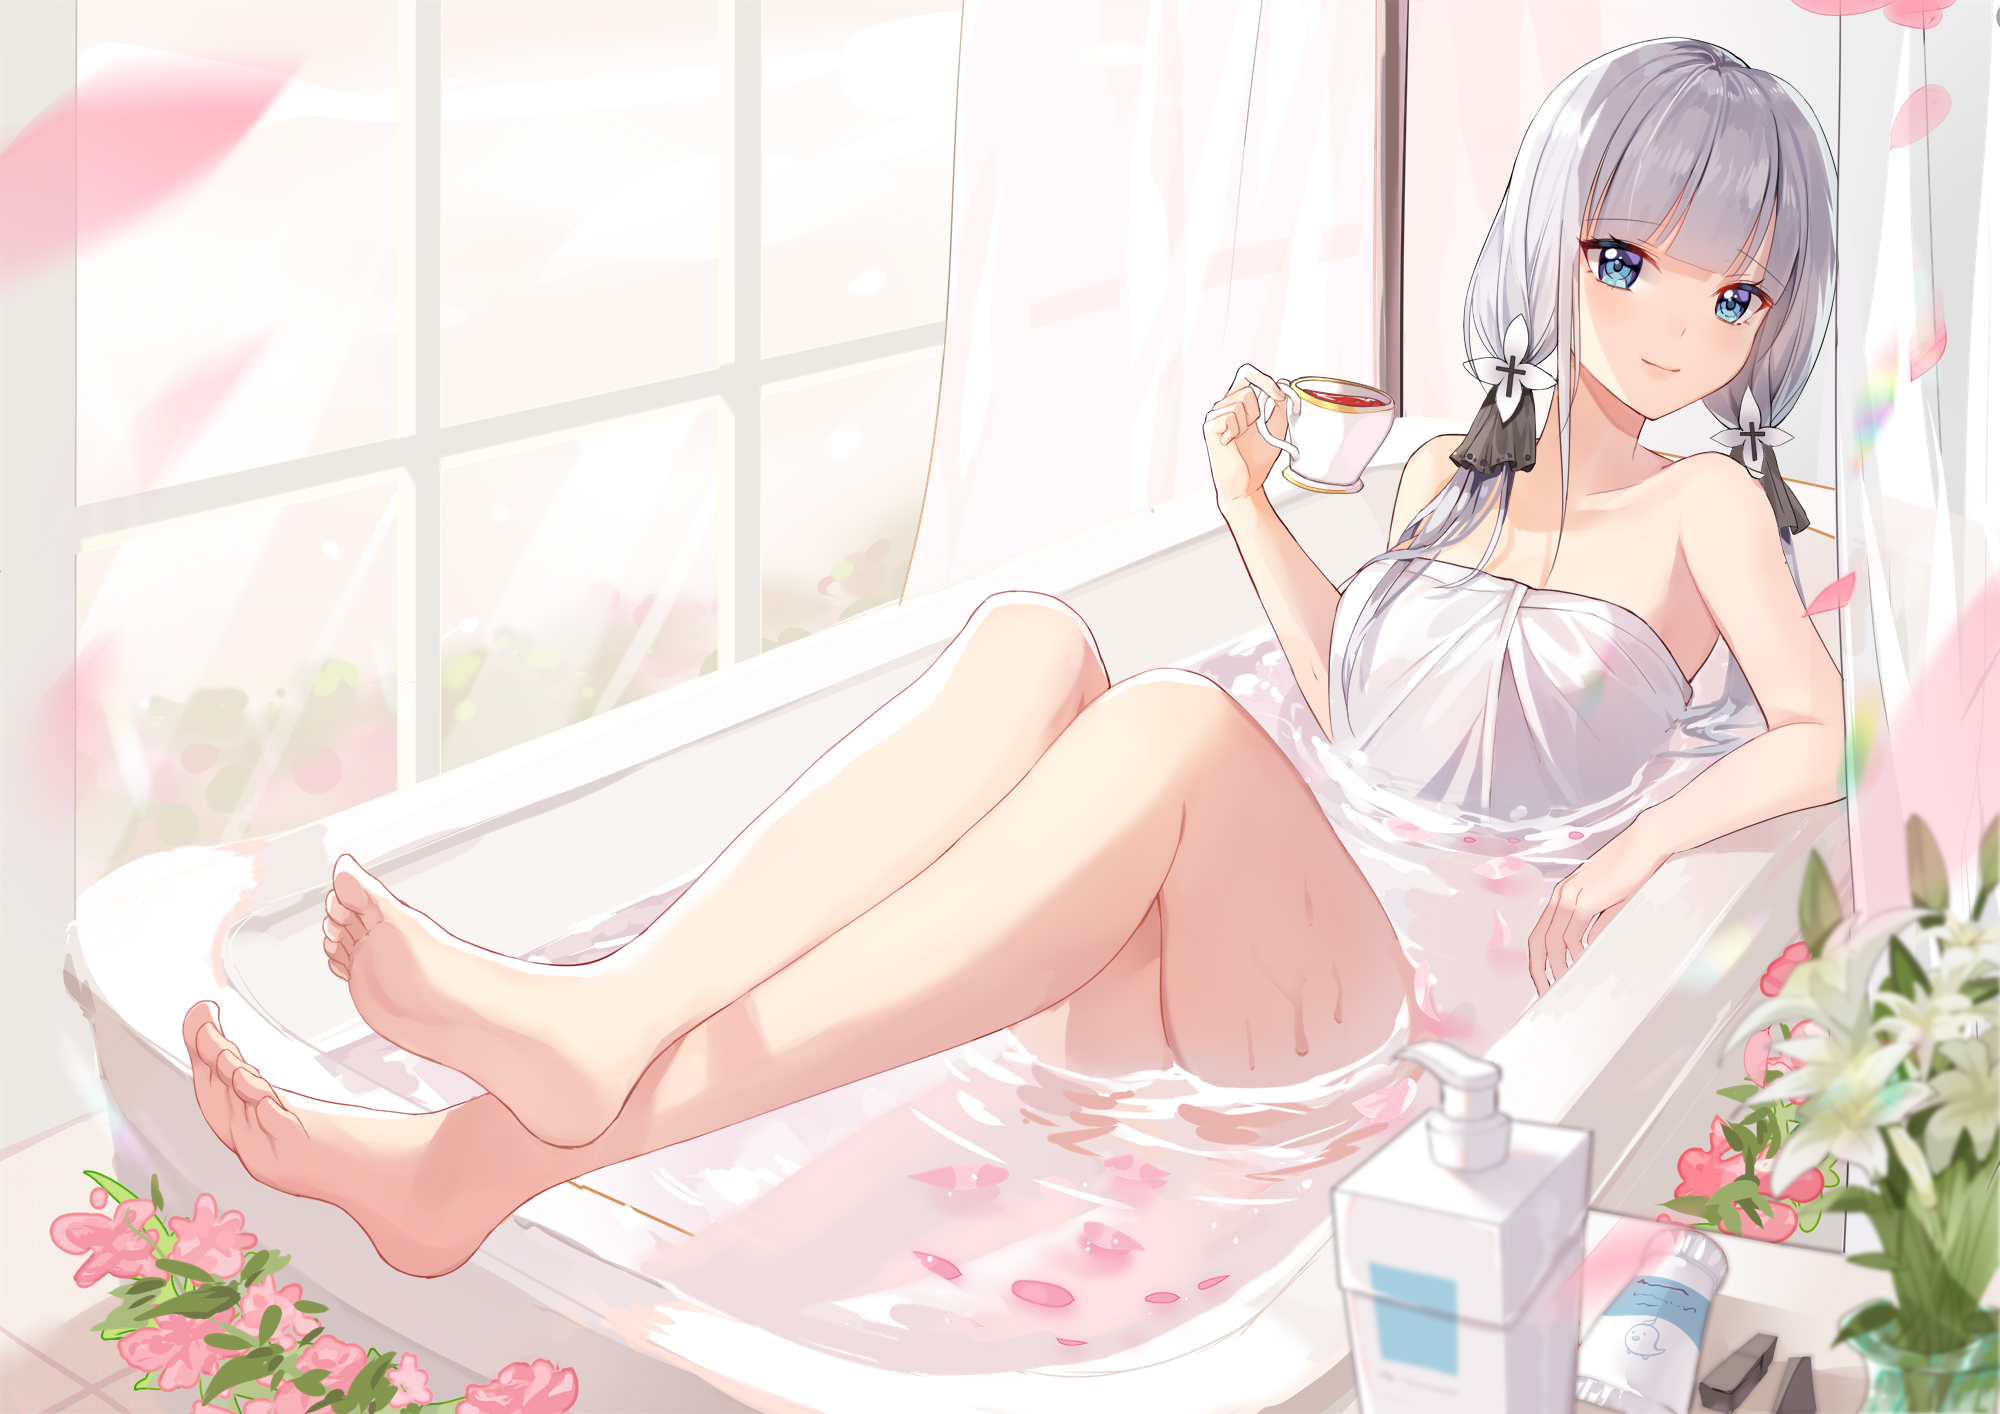 Anime 2000x1414 anime anime girls digital art artwork 2D Azur Lane Illustrious (Azur Lane) in bathtub towel wet feet